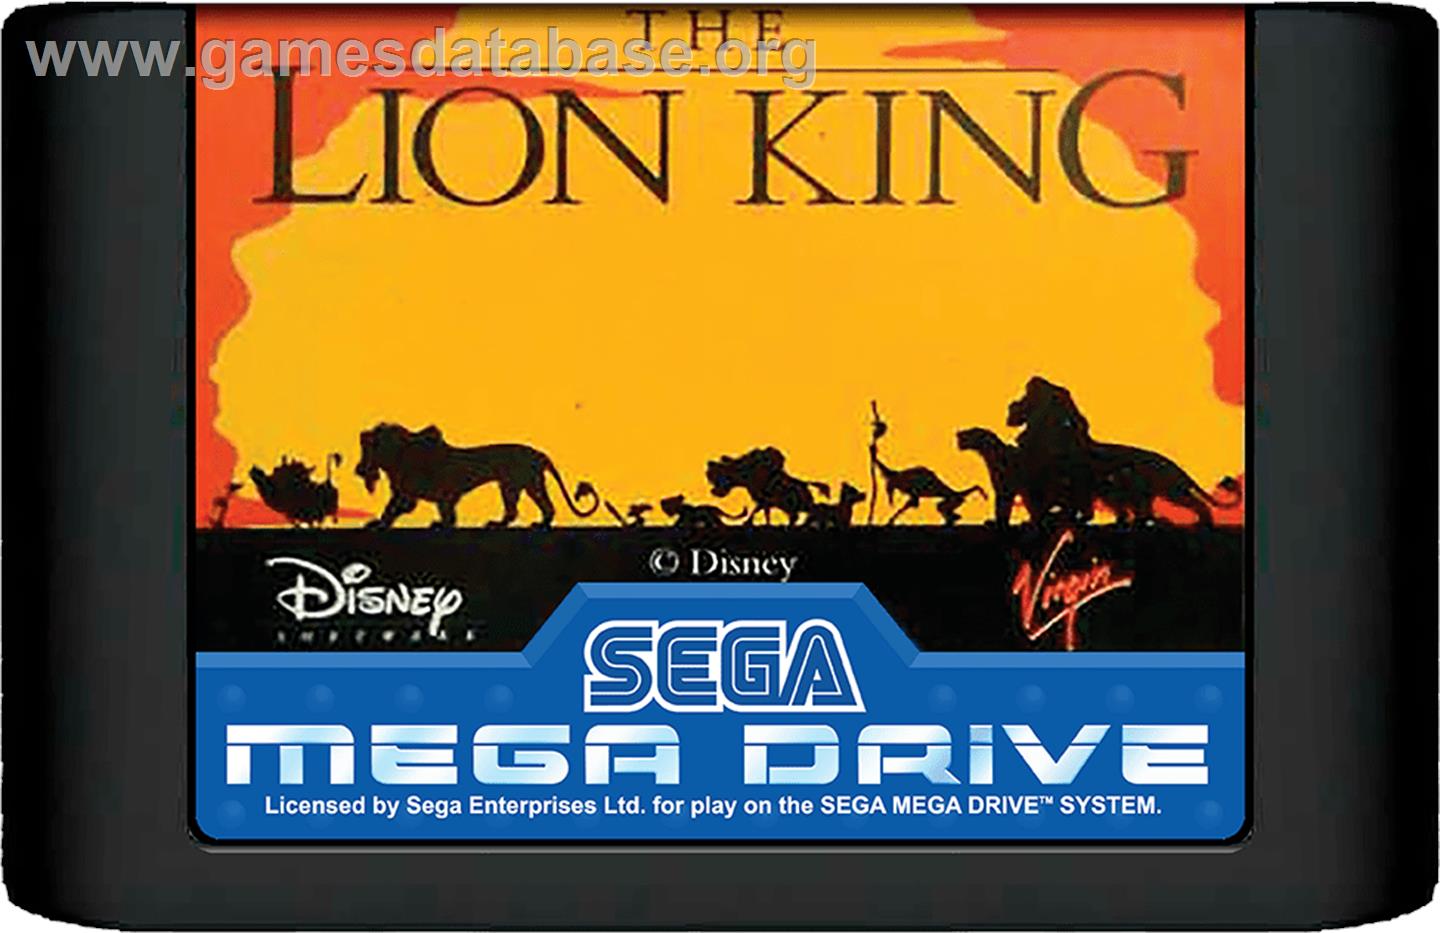 Lion King, The - Sega Genesis - Artwork - Cartridge